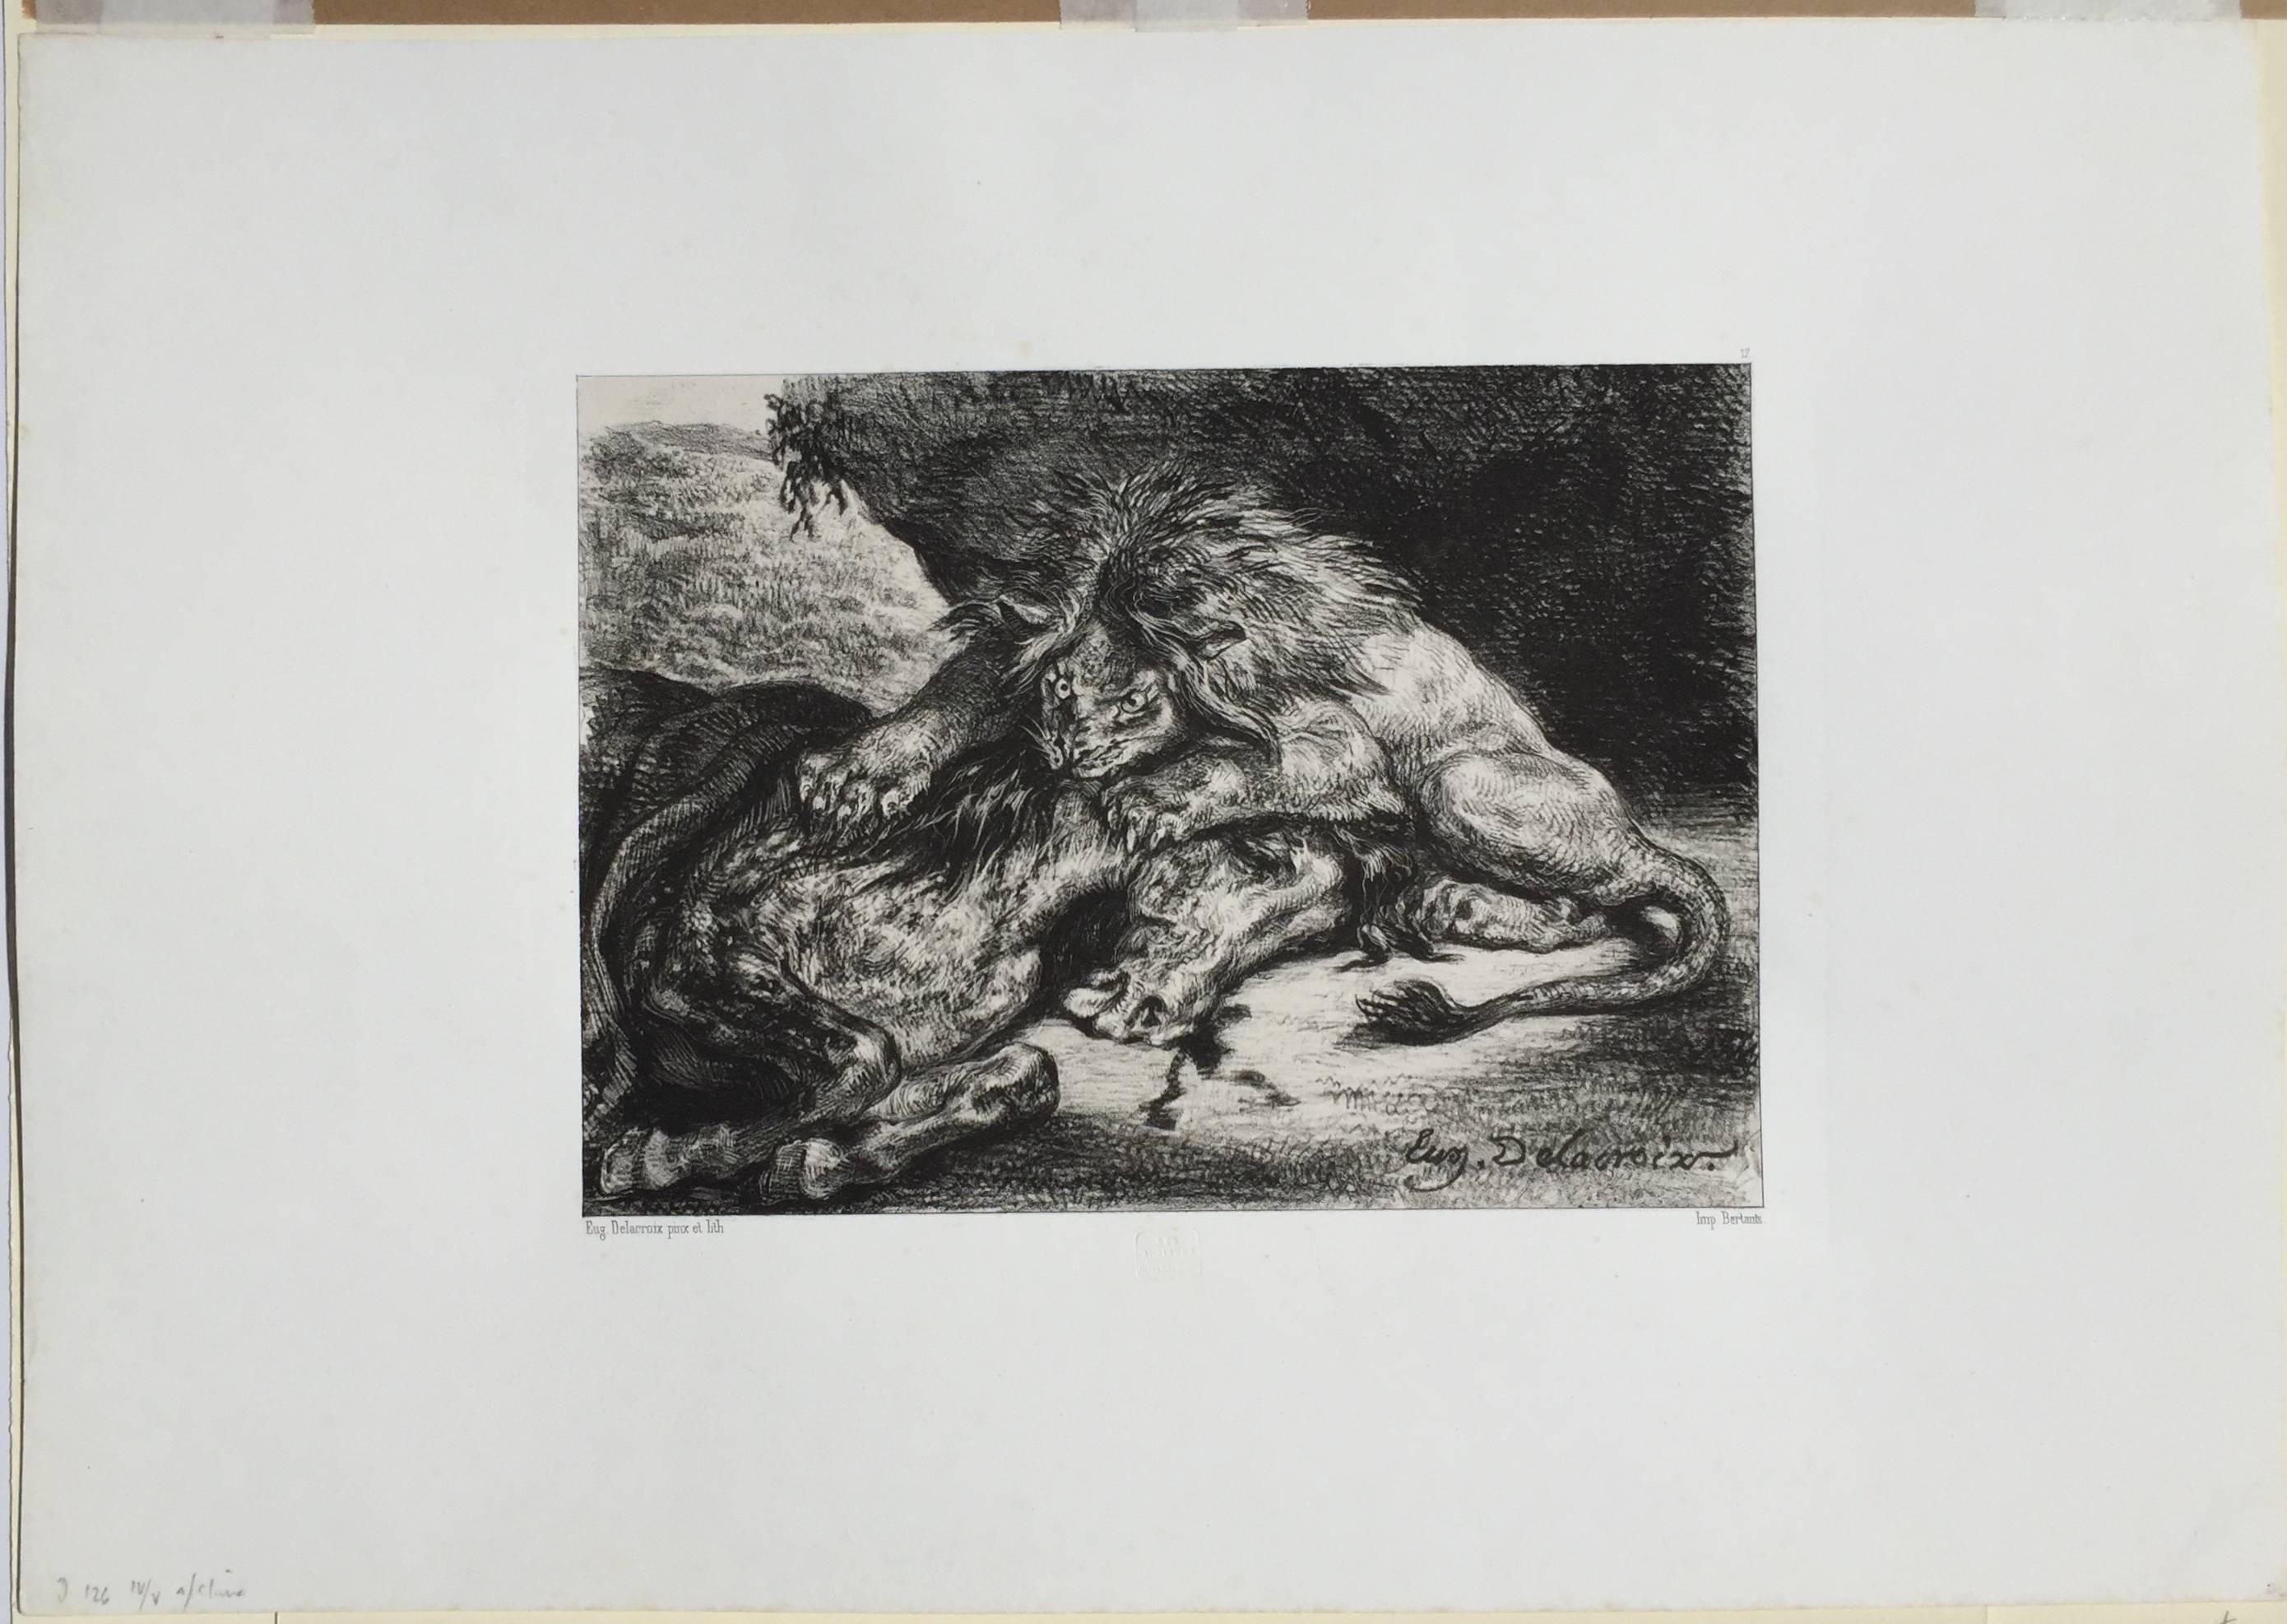 LION DEVORANT UN CHEVAL  - Lion Devouring a Horse - Print by Eugene Delacroix